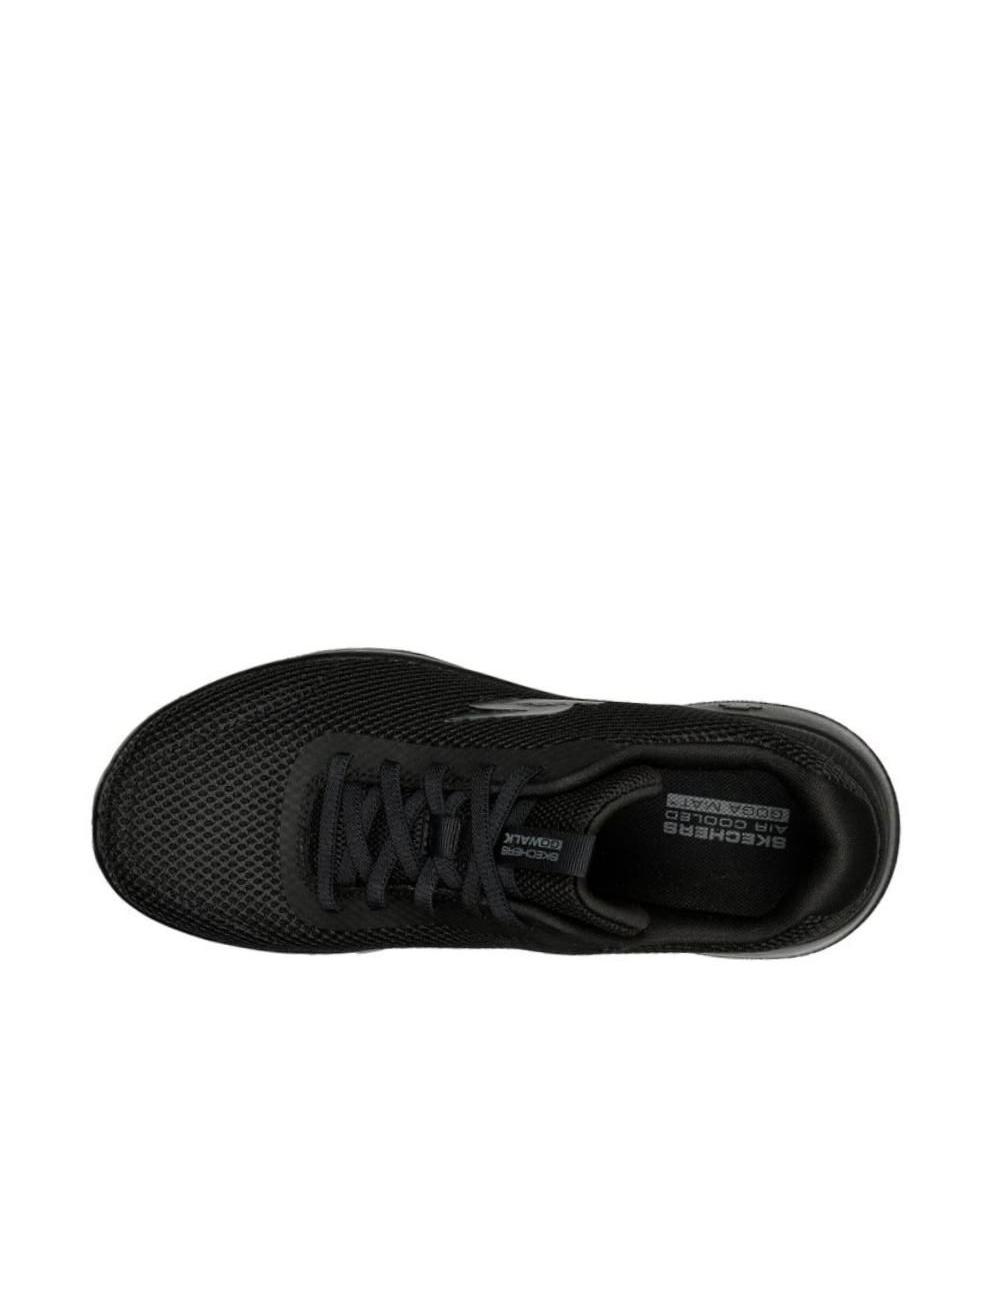 WALK – Zapatillas cómodas de mujer NEGRO/NEGRO  Zapatillas mujer,  Deportivas negras, Zapato deportivo de mujer